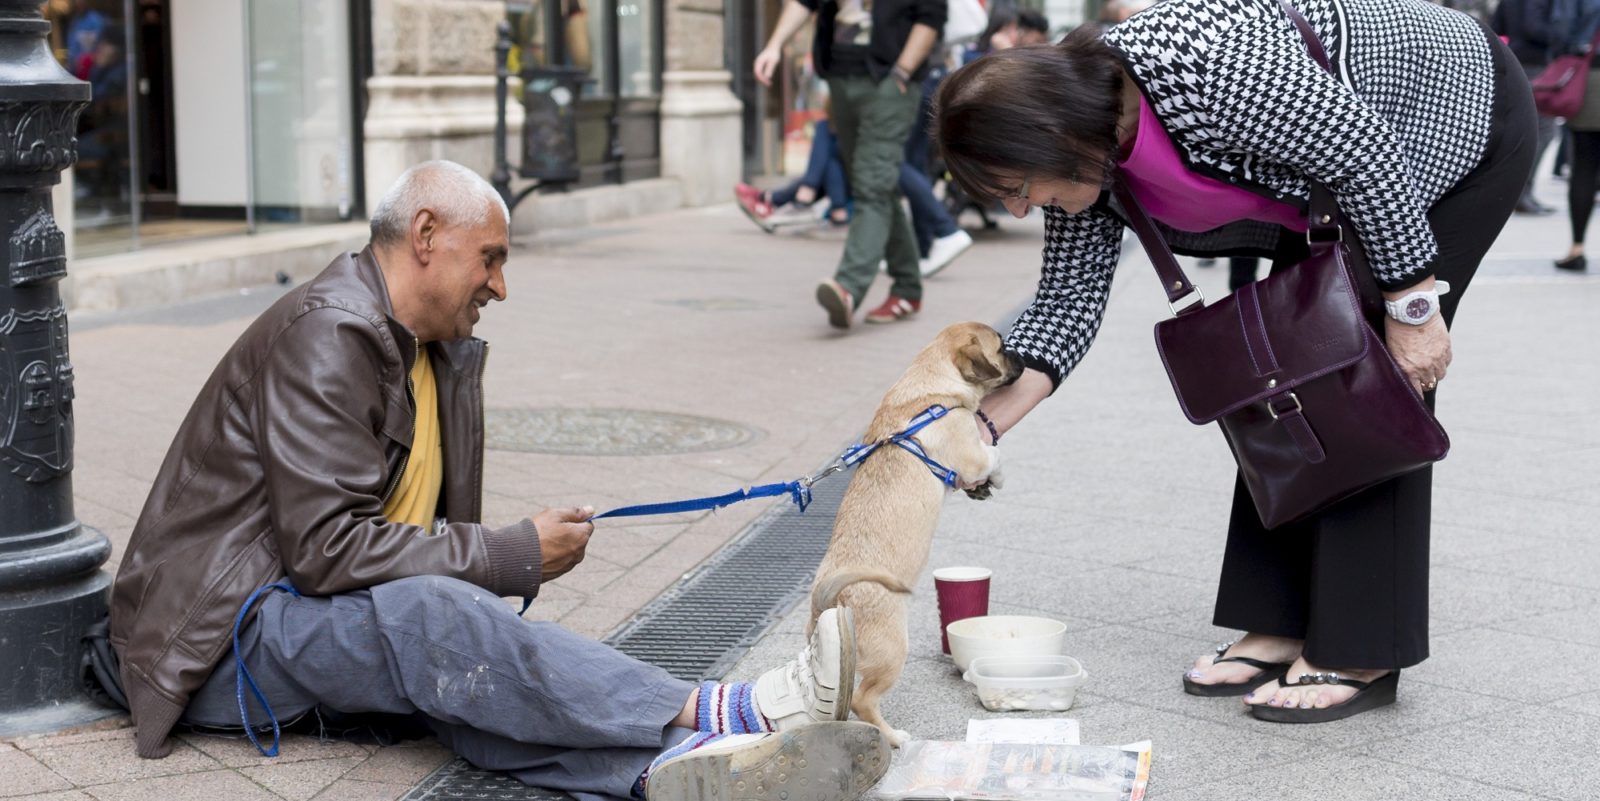 Zdjecie bezdomnego z psem, przy ktorych zatrzymala sie kobieta. Ona bawi się z psem, on siedzi na ulicy. Pies szczeniaczek, jest trzymany na smycyz przez bezdomnego